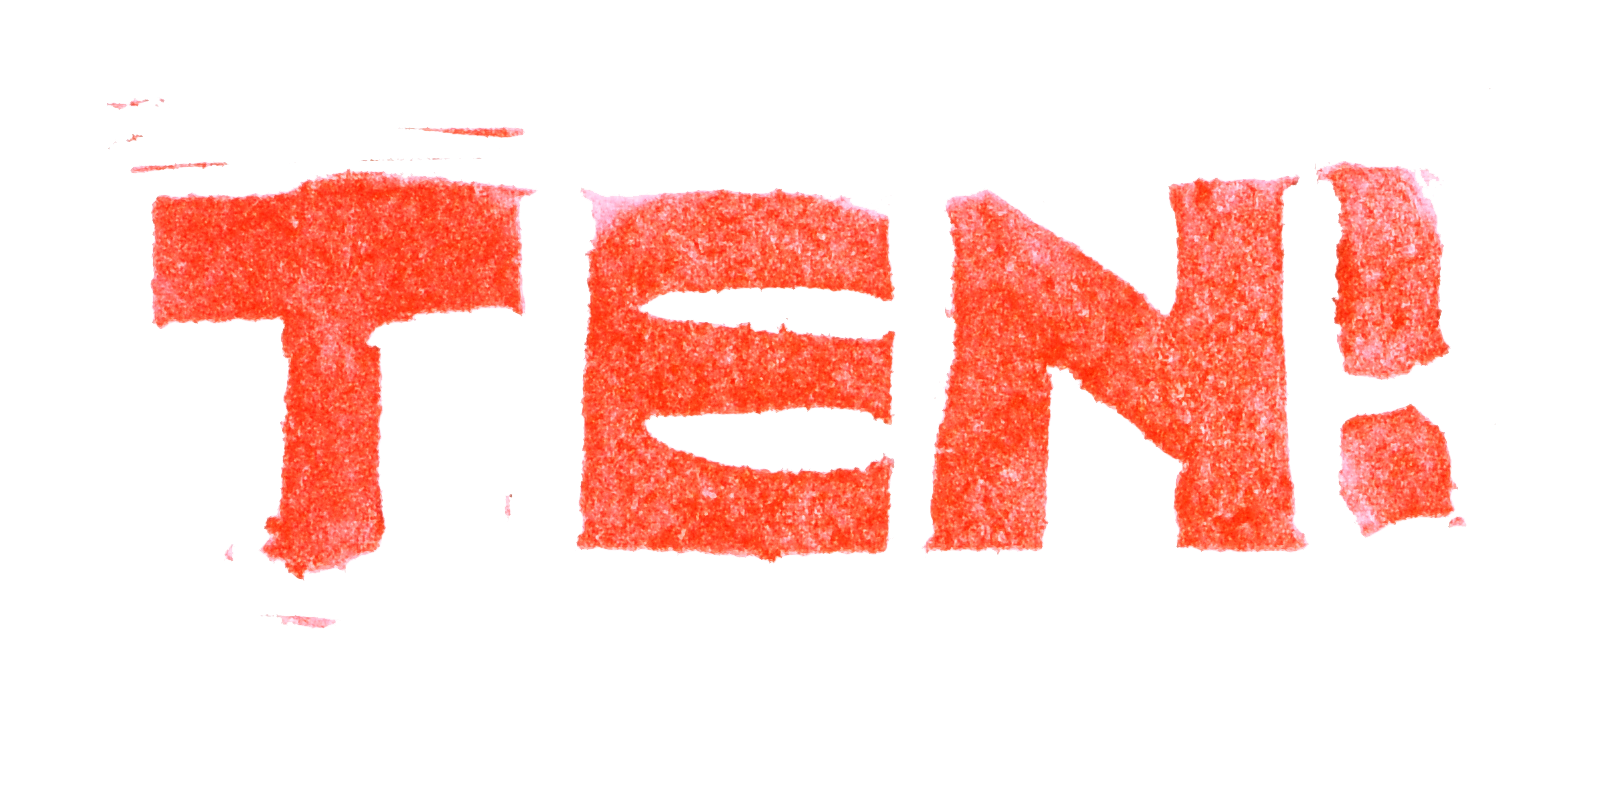 Ten!